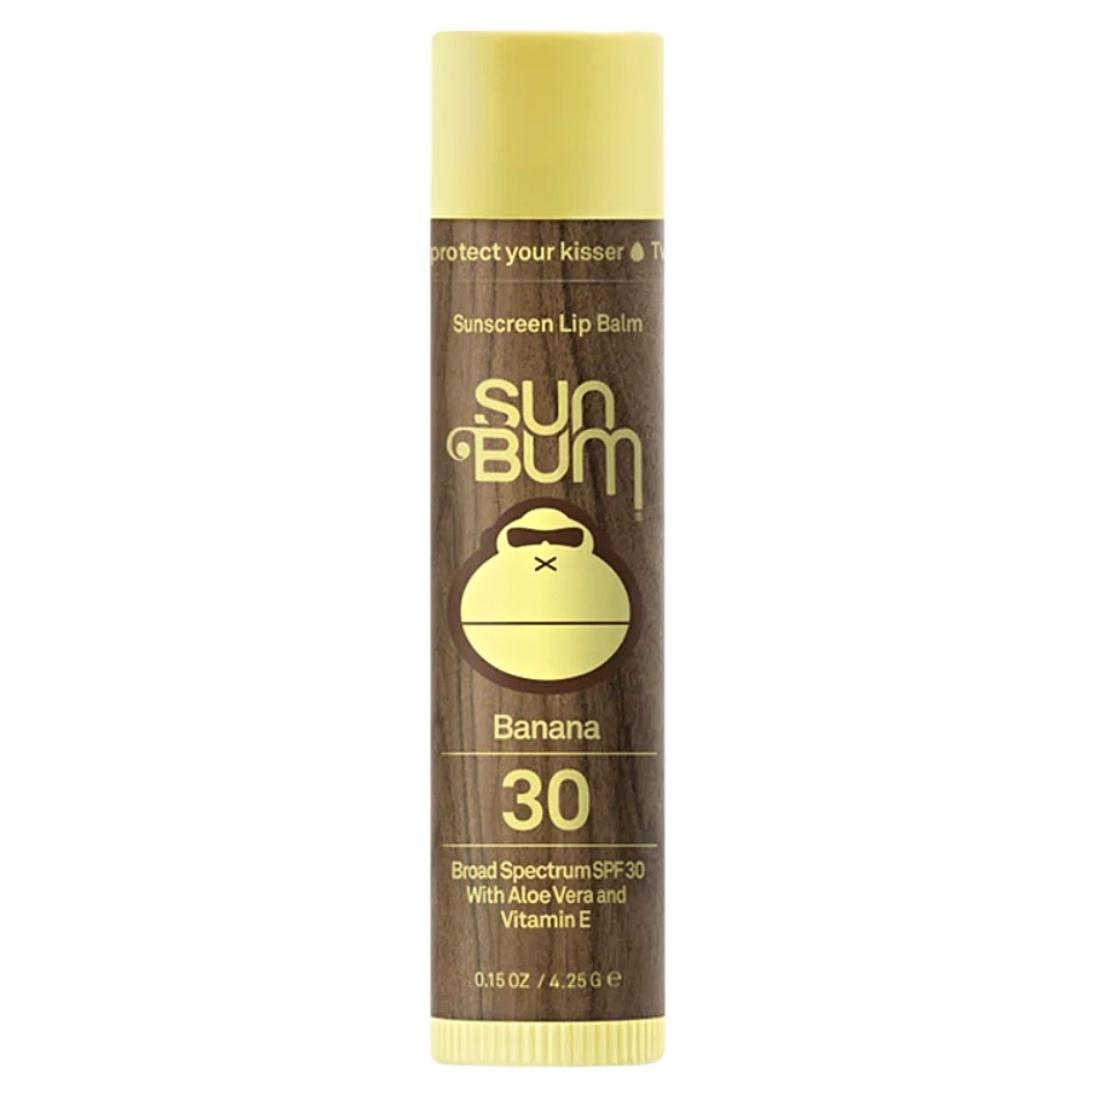 Sun Bum Original SPF 30 Lip Balm - Banana - Sunscreen by Sun Bum 4.25g